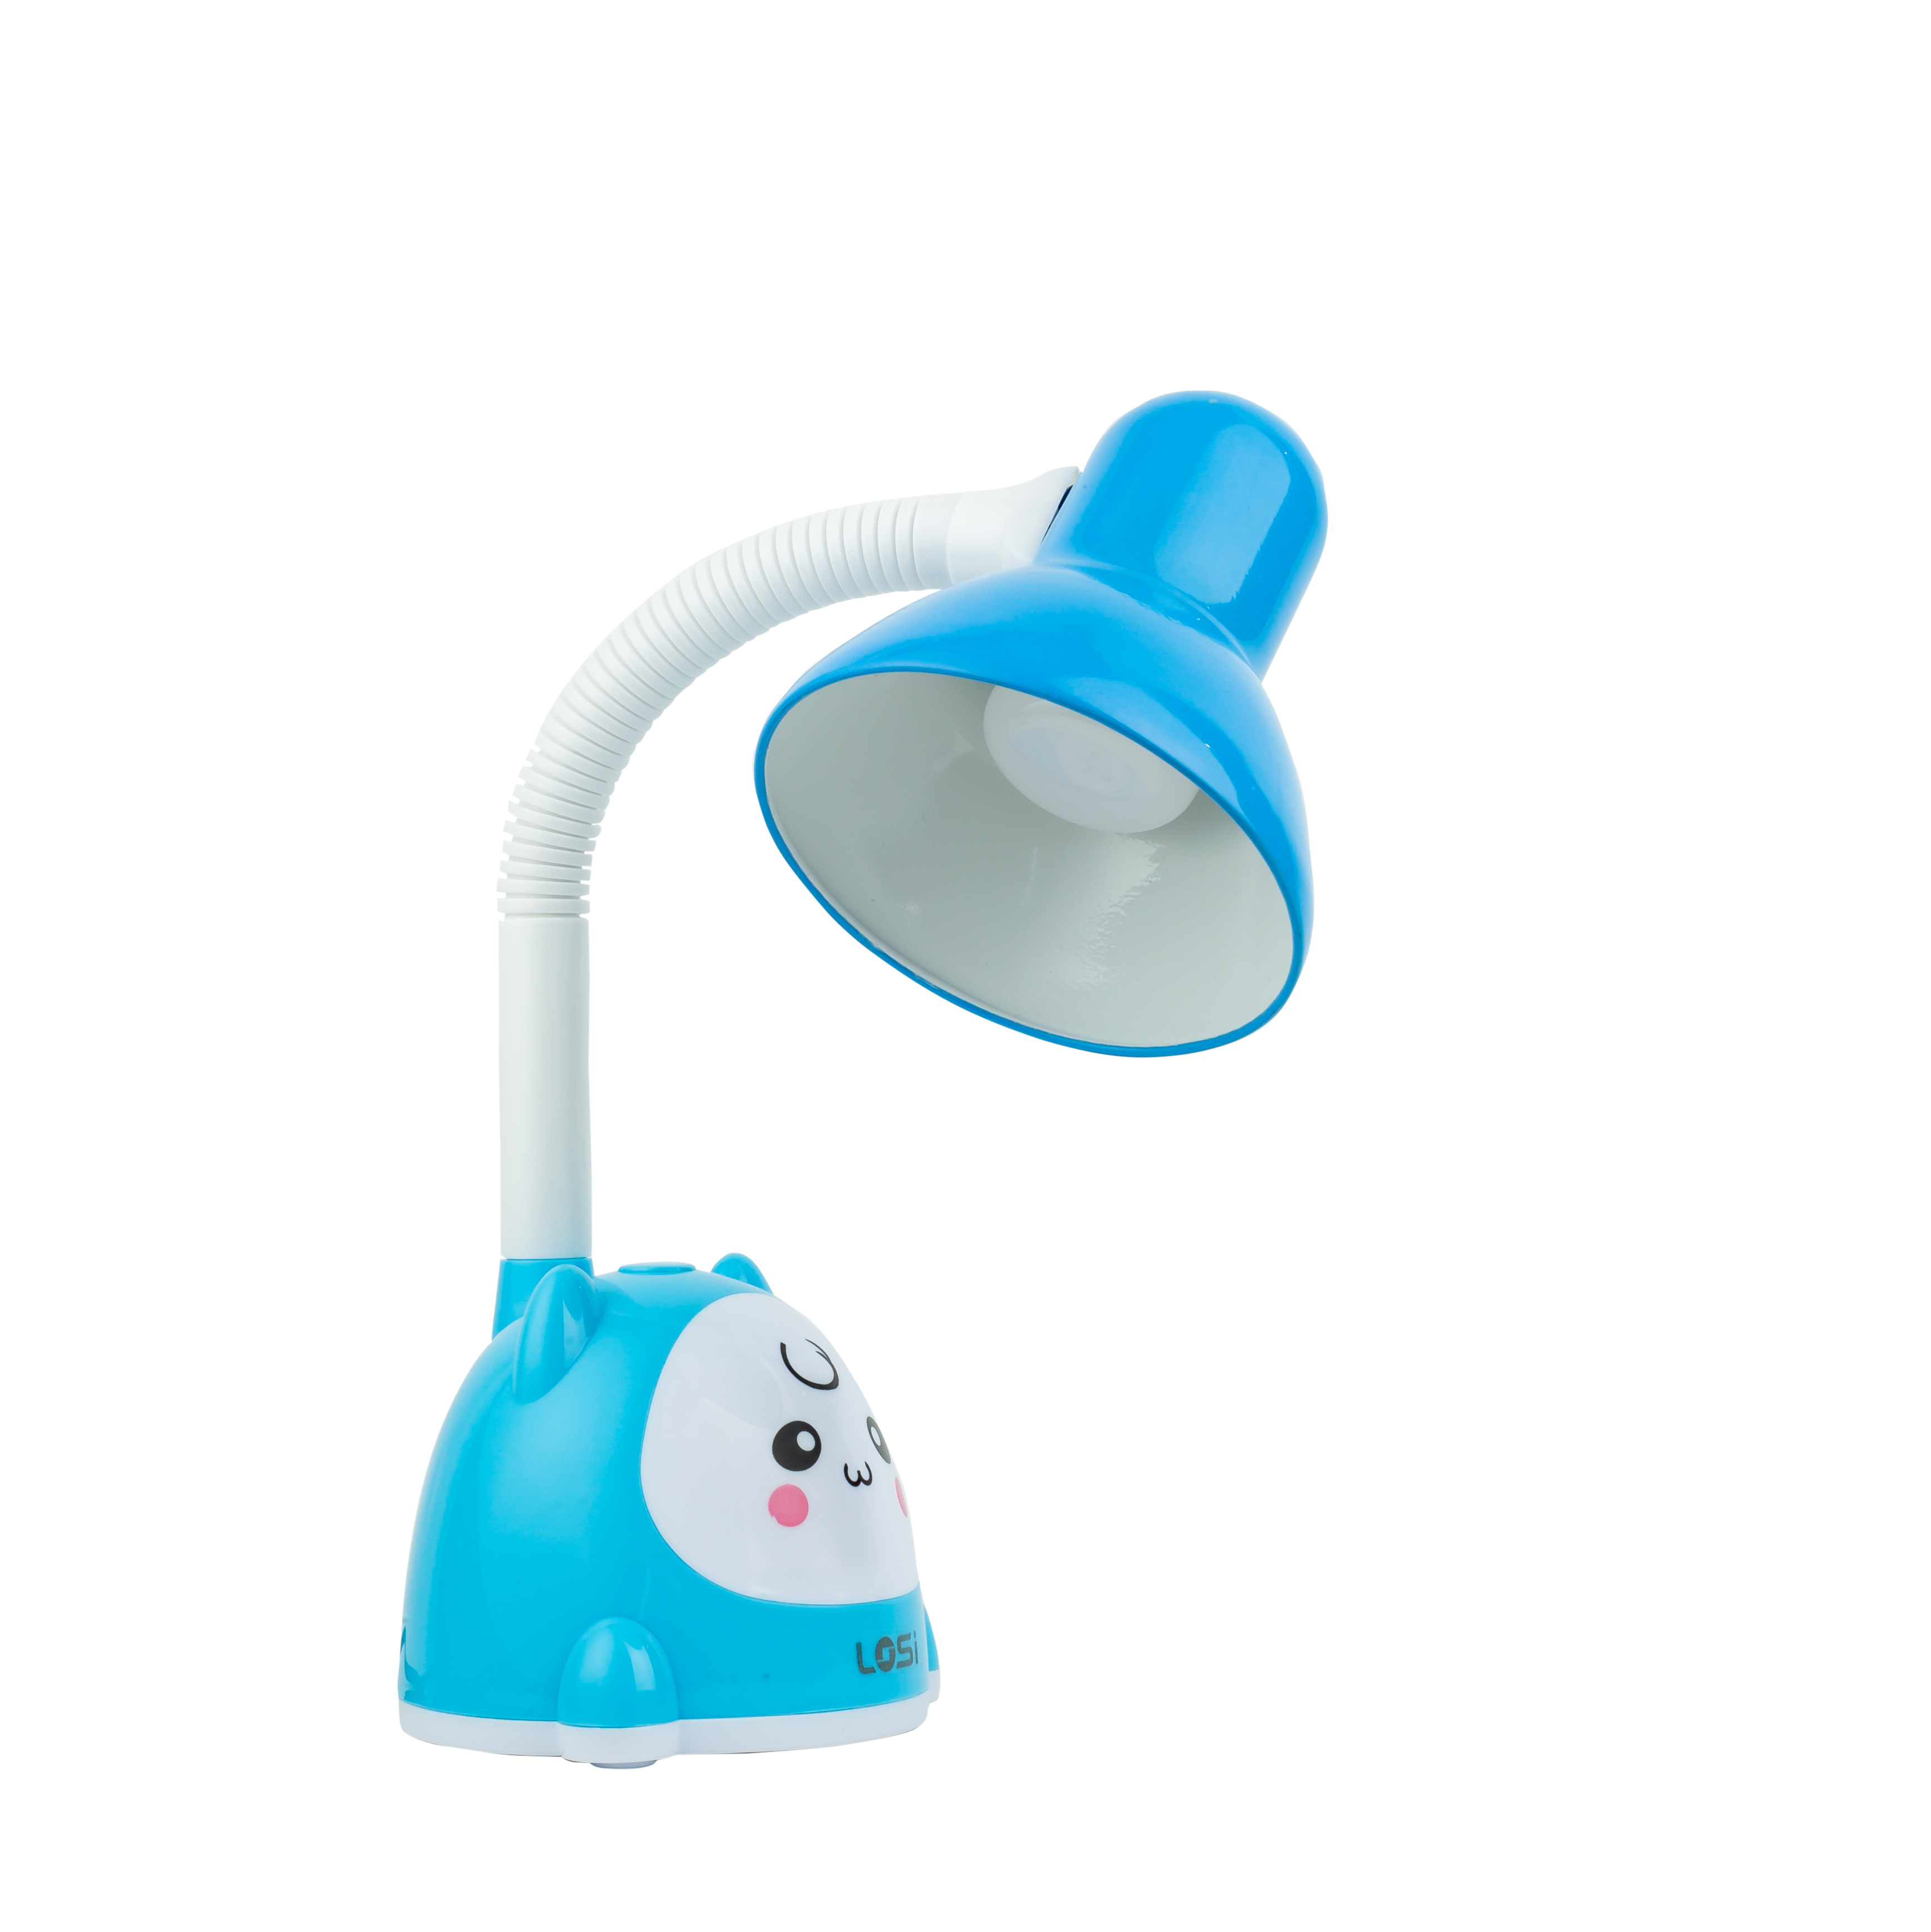 Quy tắc chọn đèn bàn LED chống cận phù hợp nhất cho trẻ